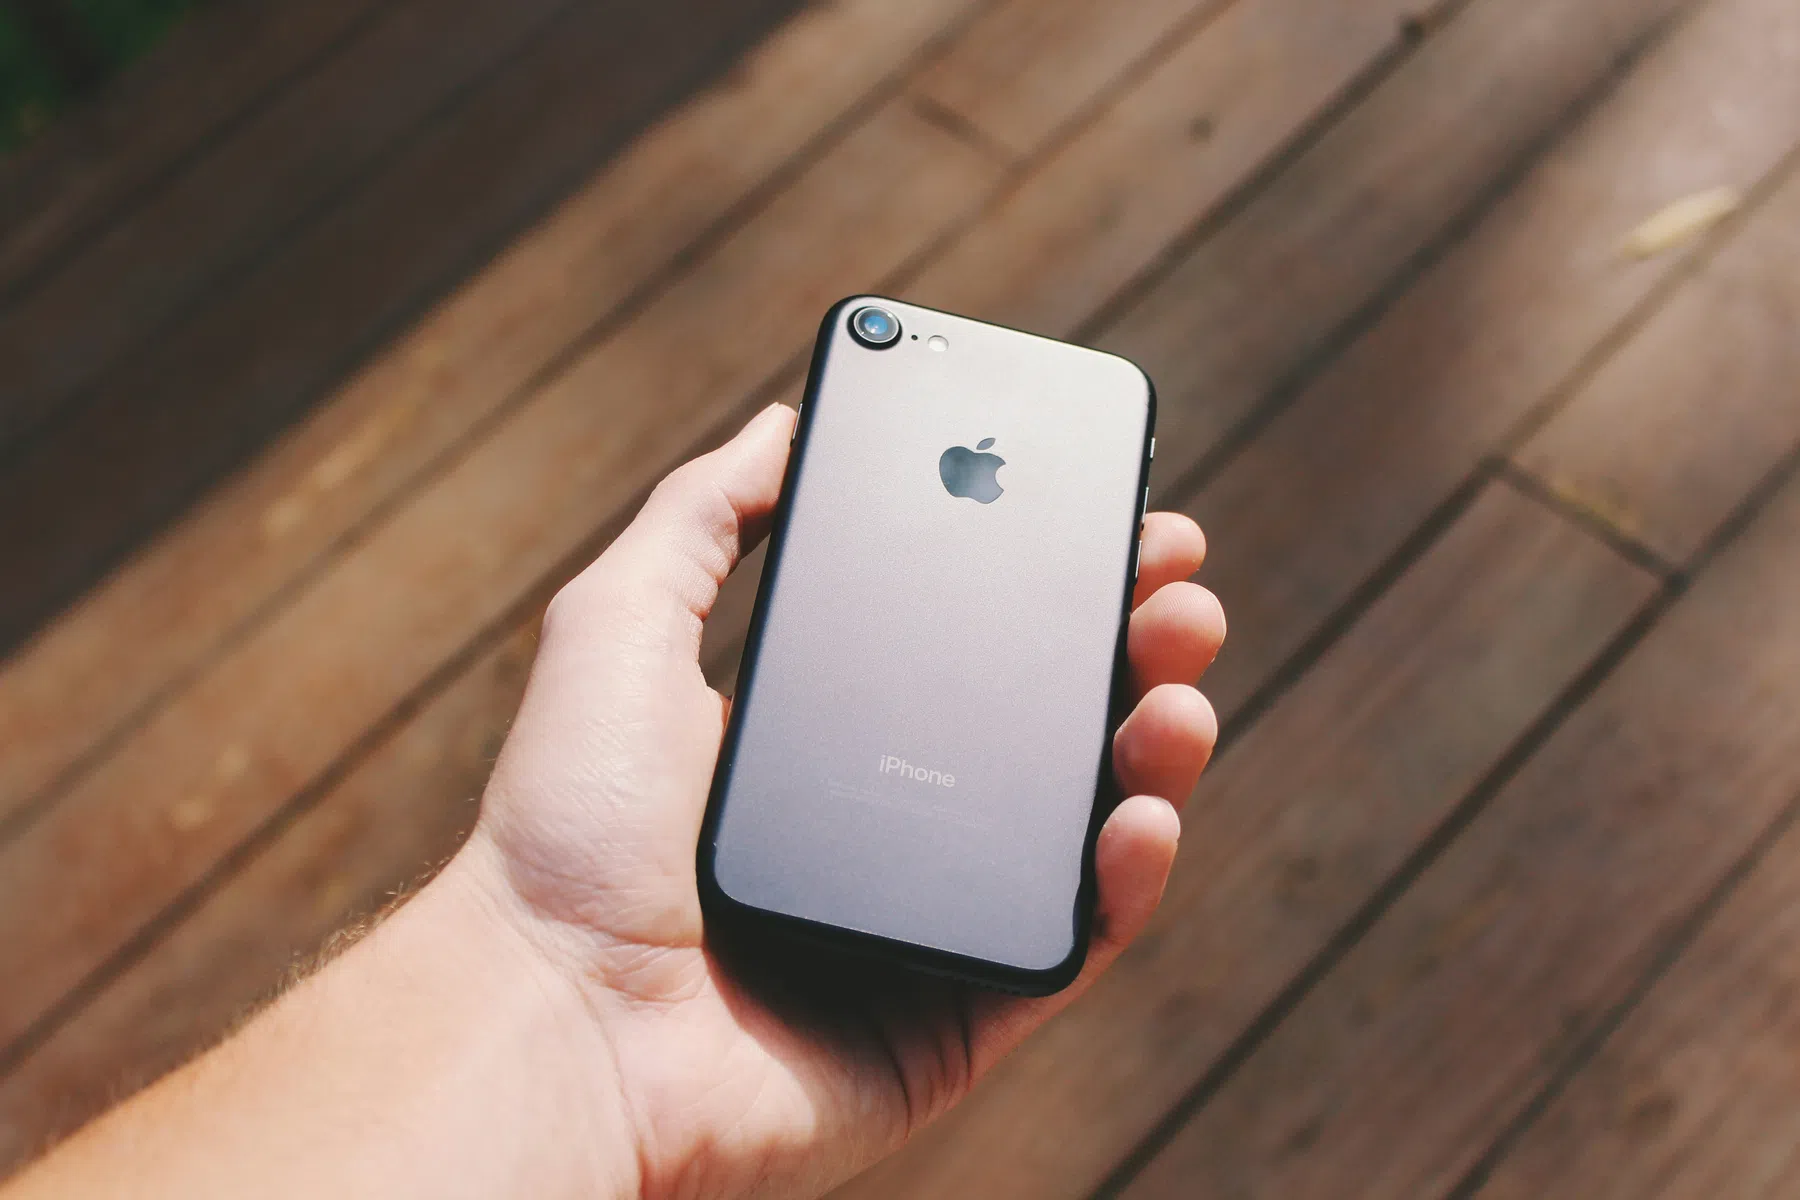 ConsumentenClaim start actie tegen Apple voor bewust trager maken iPhones